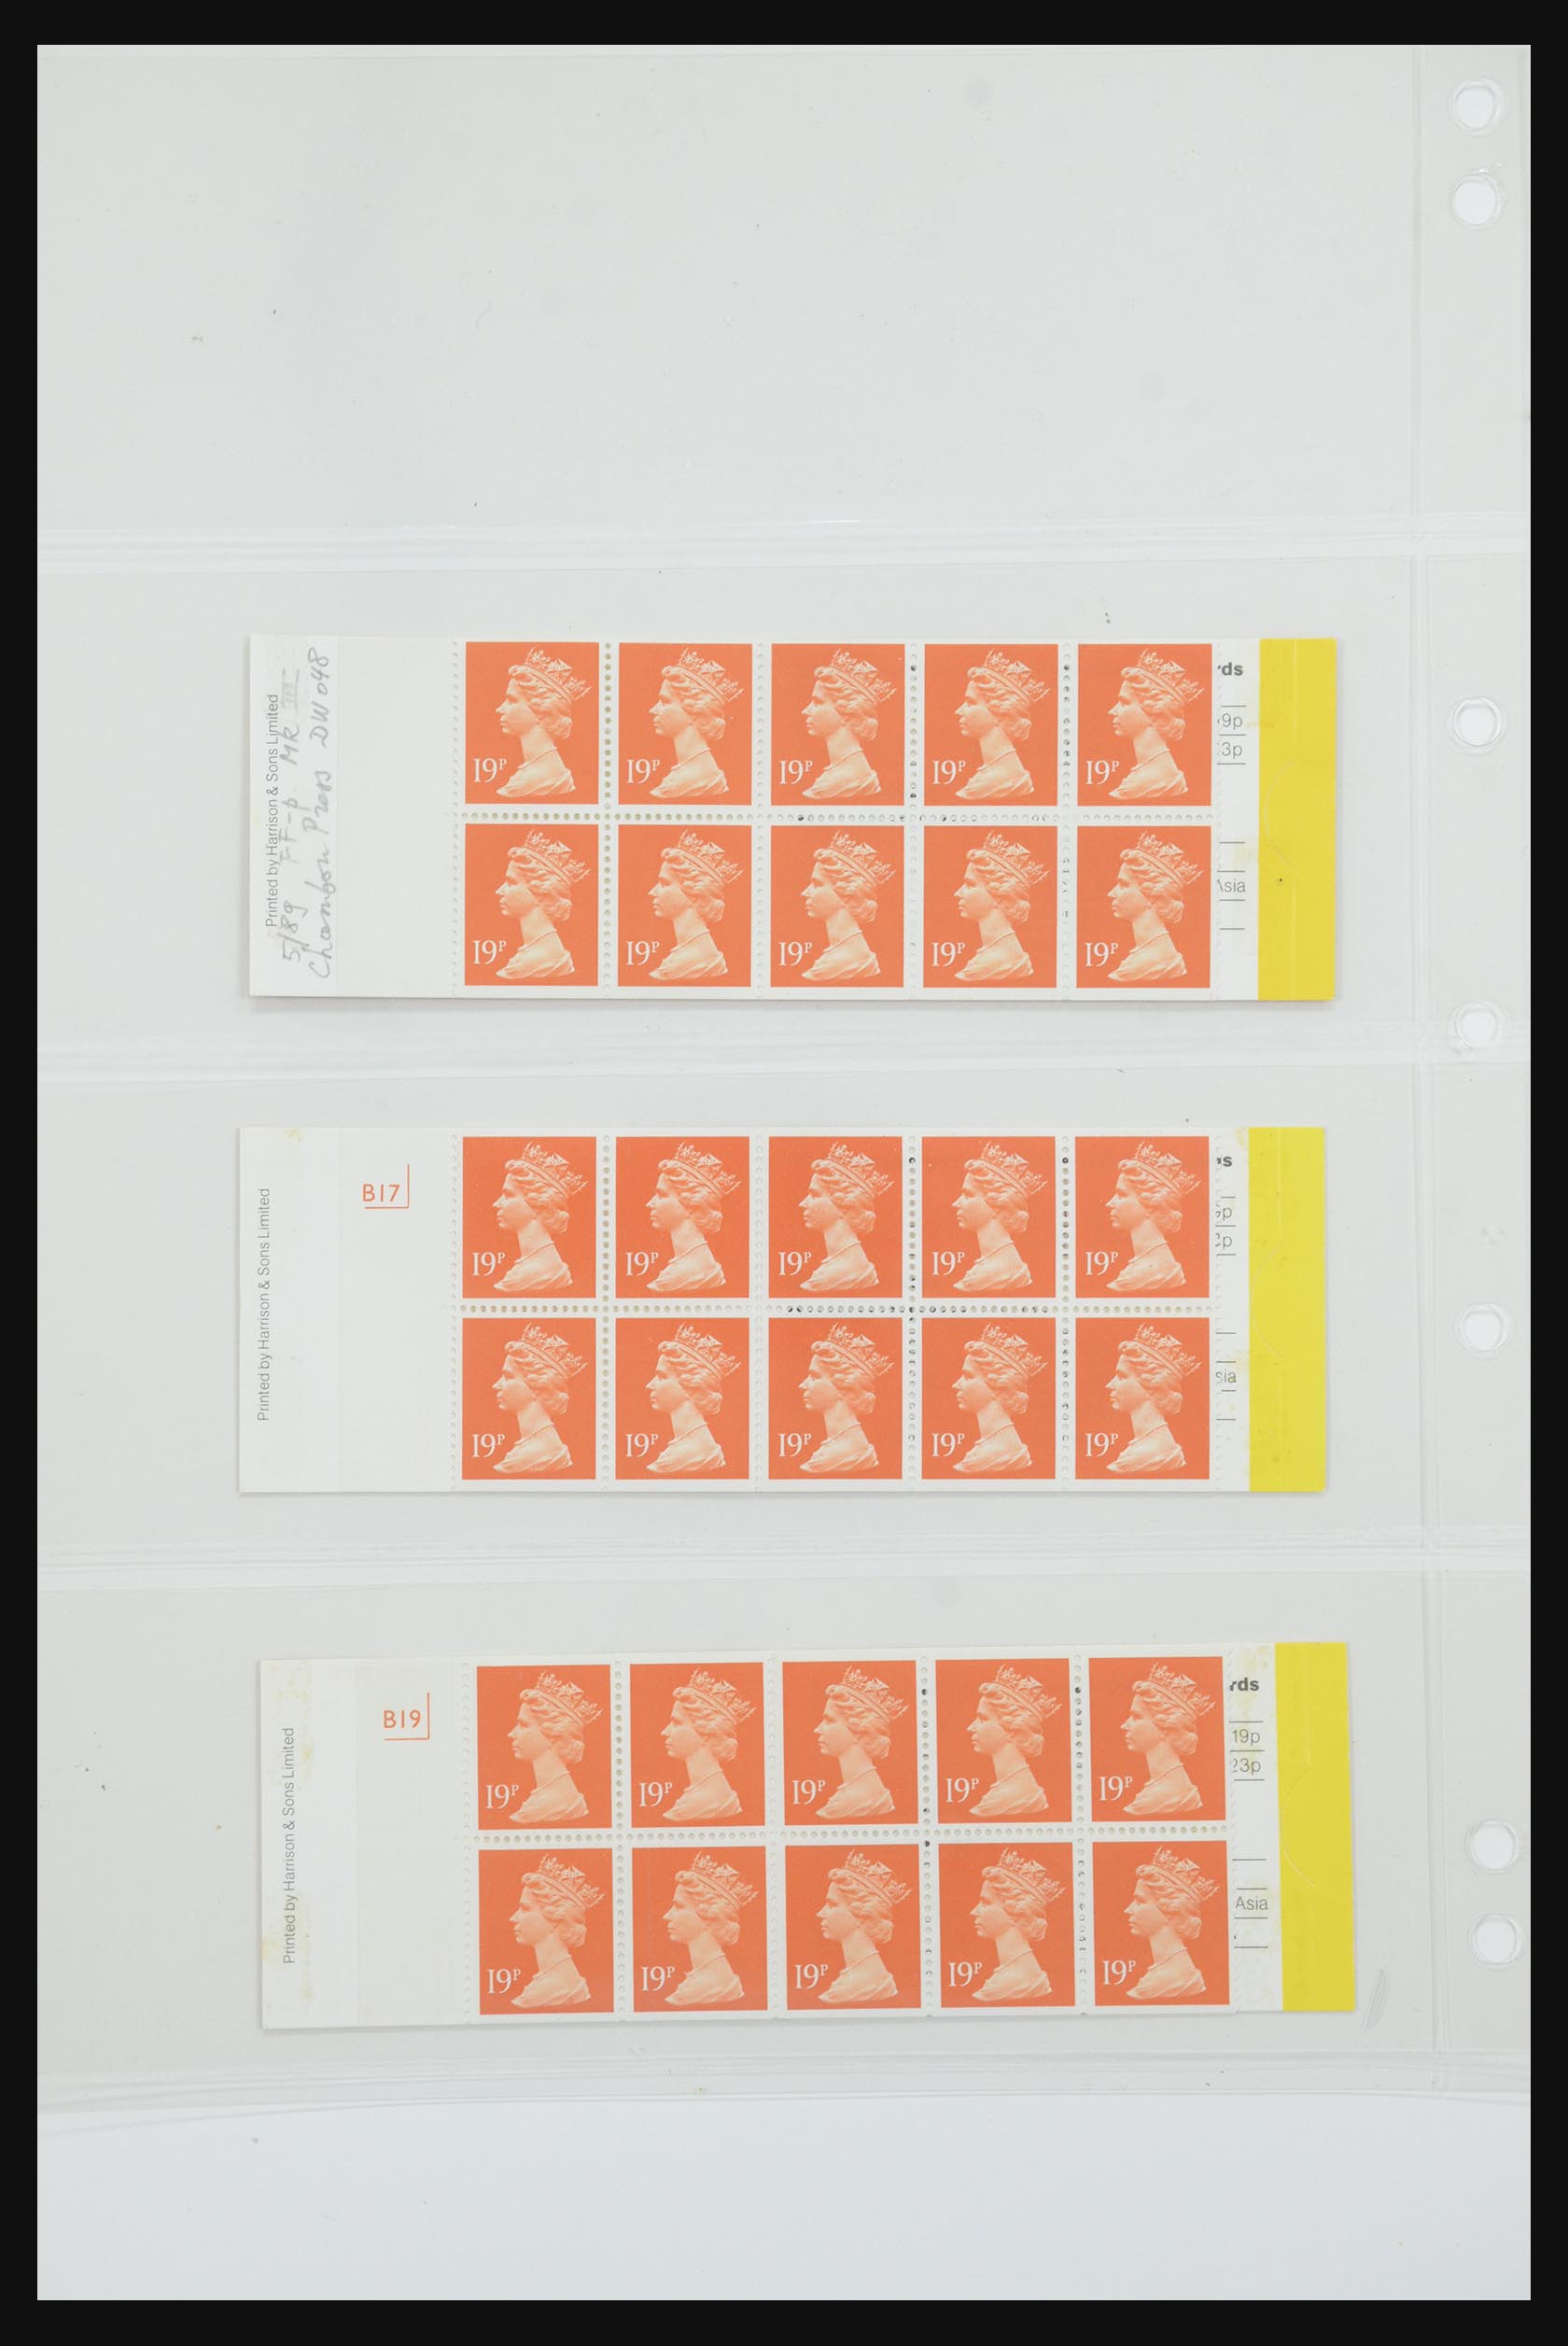 31959 074 - 31959 Engeland postzegelboekjes 1987-2016!!